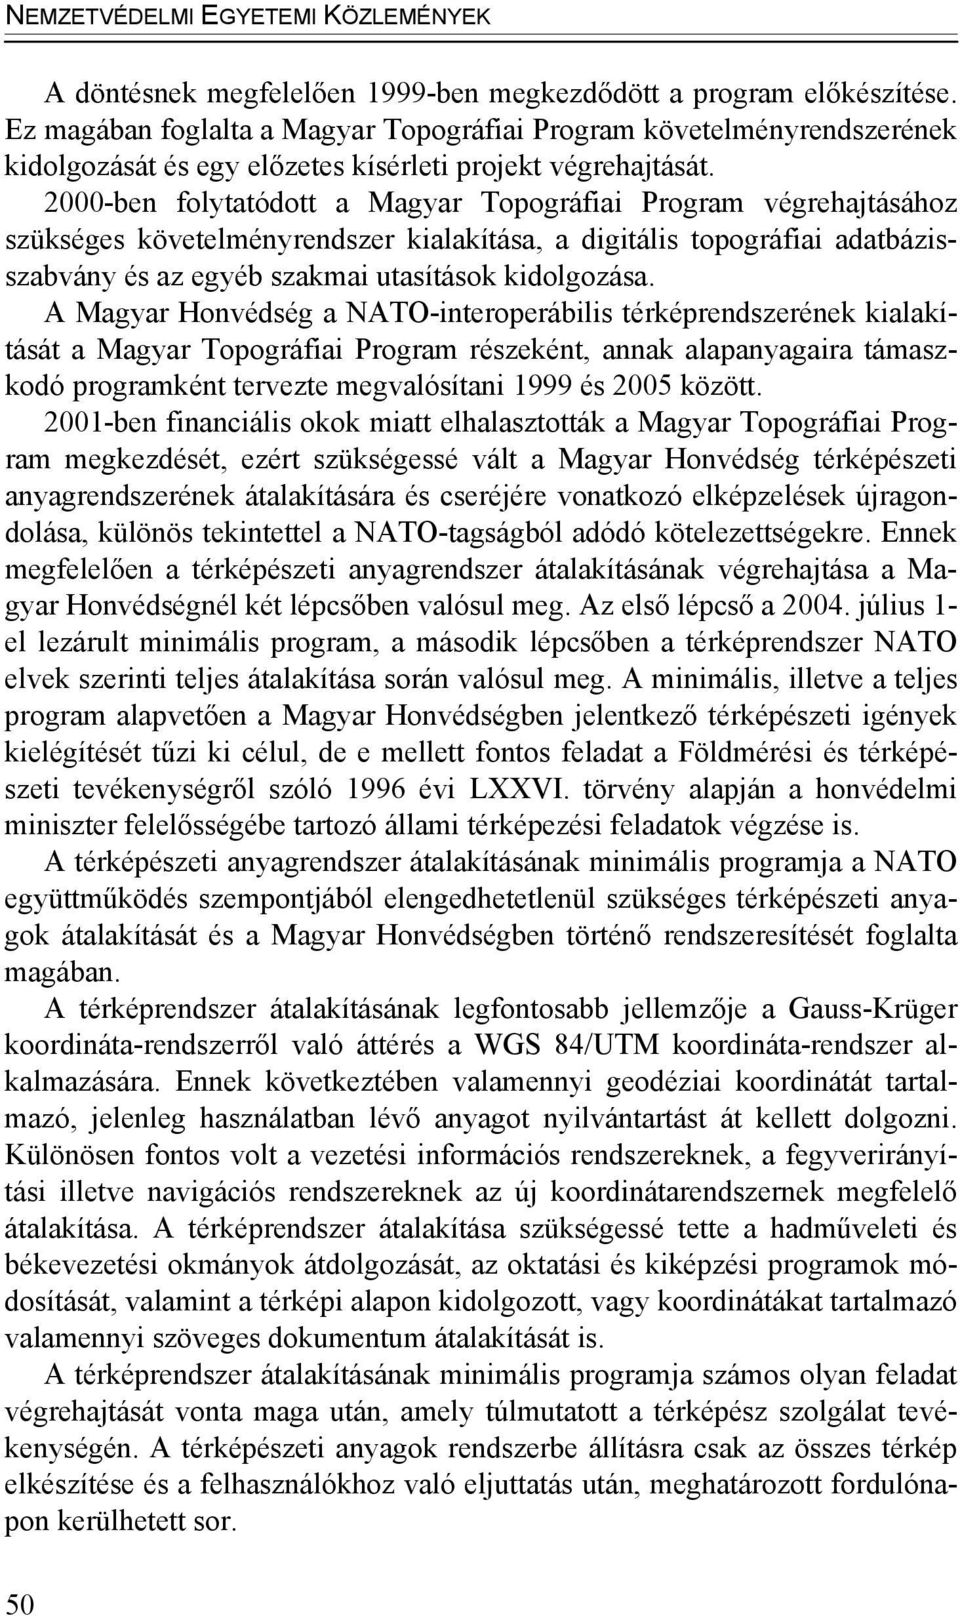 2000-ben folytatódott a Magyar Topográfiai Program végrehajtásához szükséges követelményrendszer kialakítása, a digitális topográfiai adatbázisszabvány és az egyéb szakmai utasítások kidolgozása.